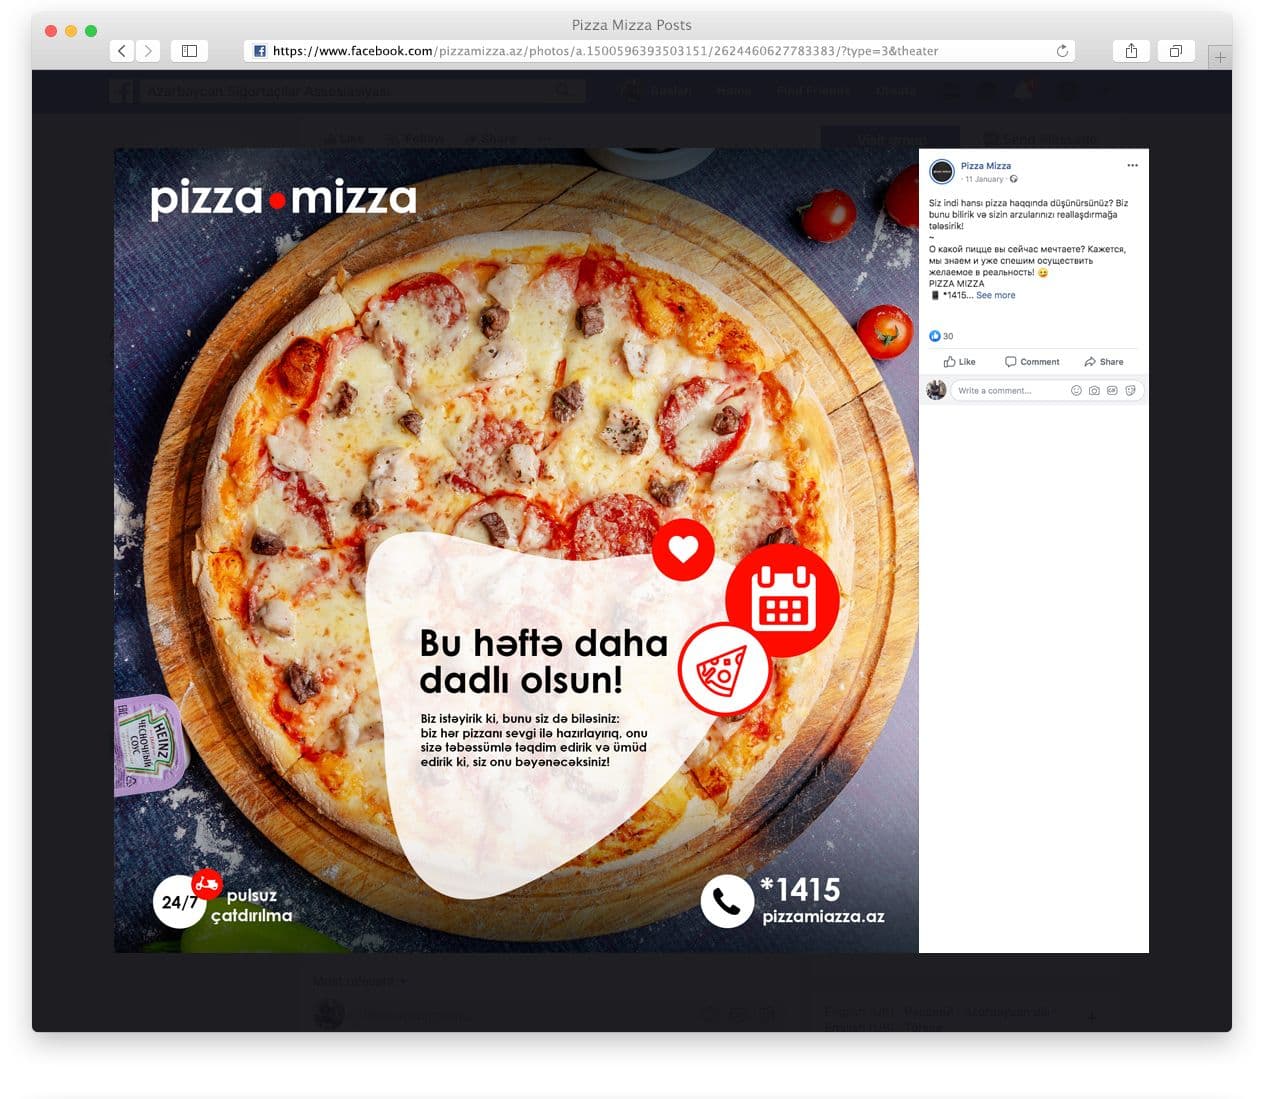 17pizza-mizza-case.jpg